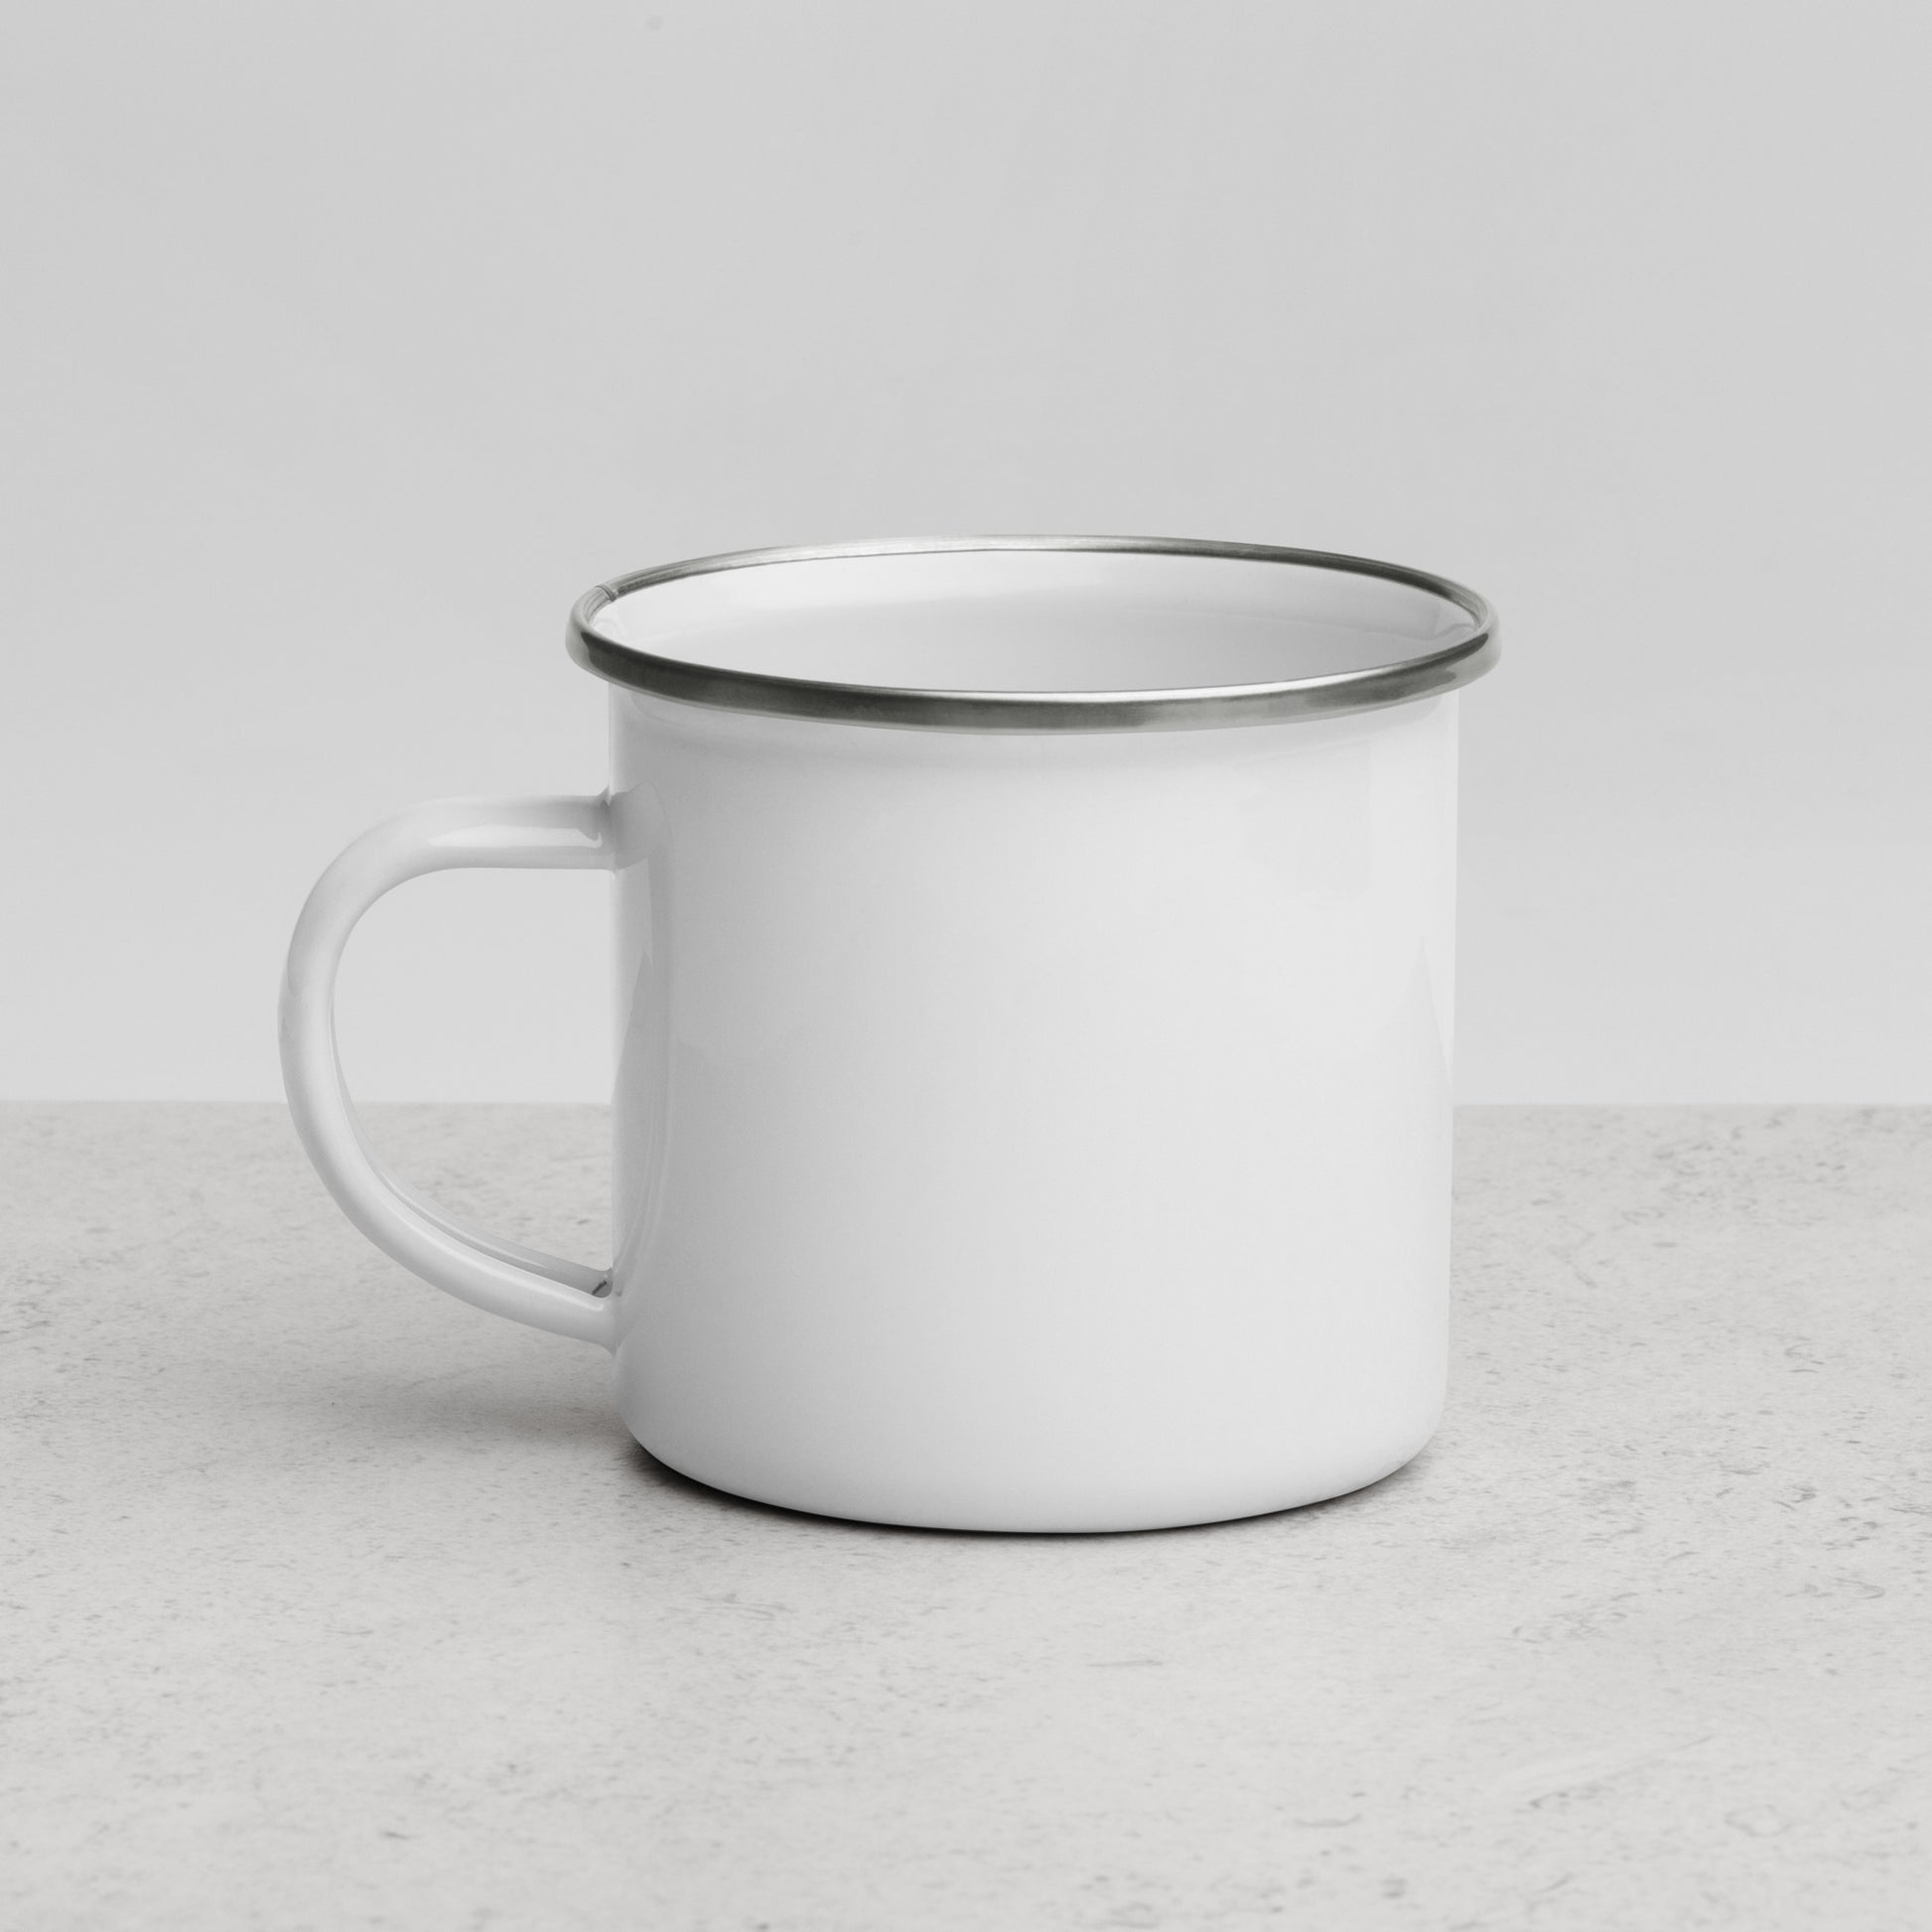 brand-age-mug